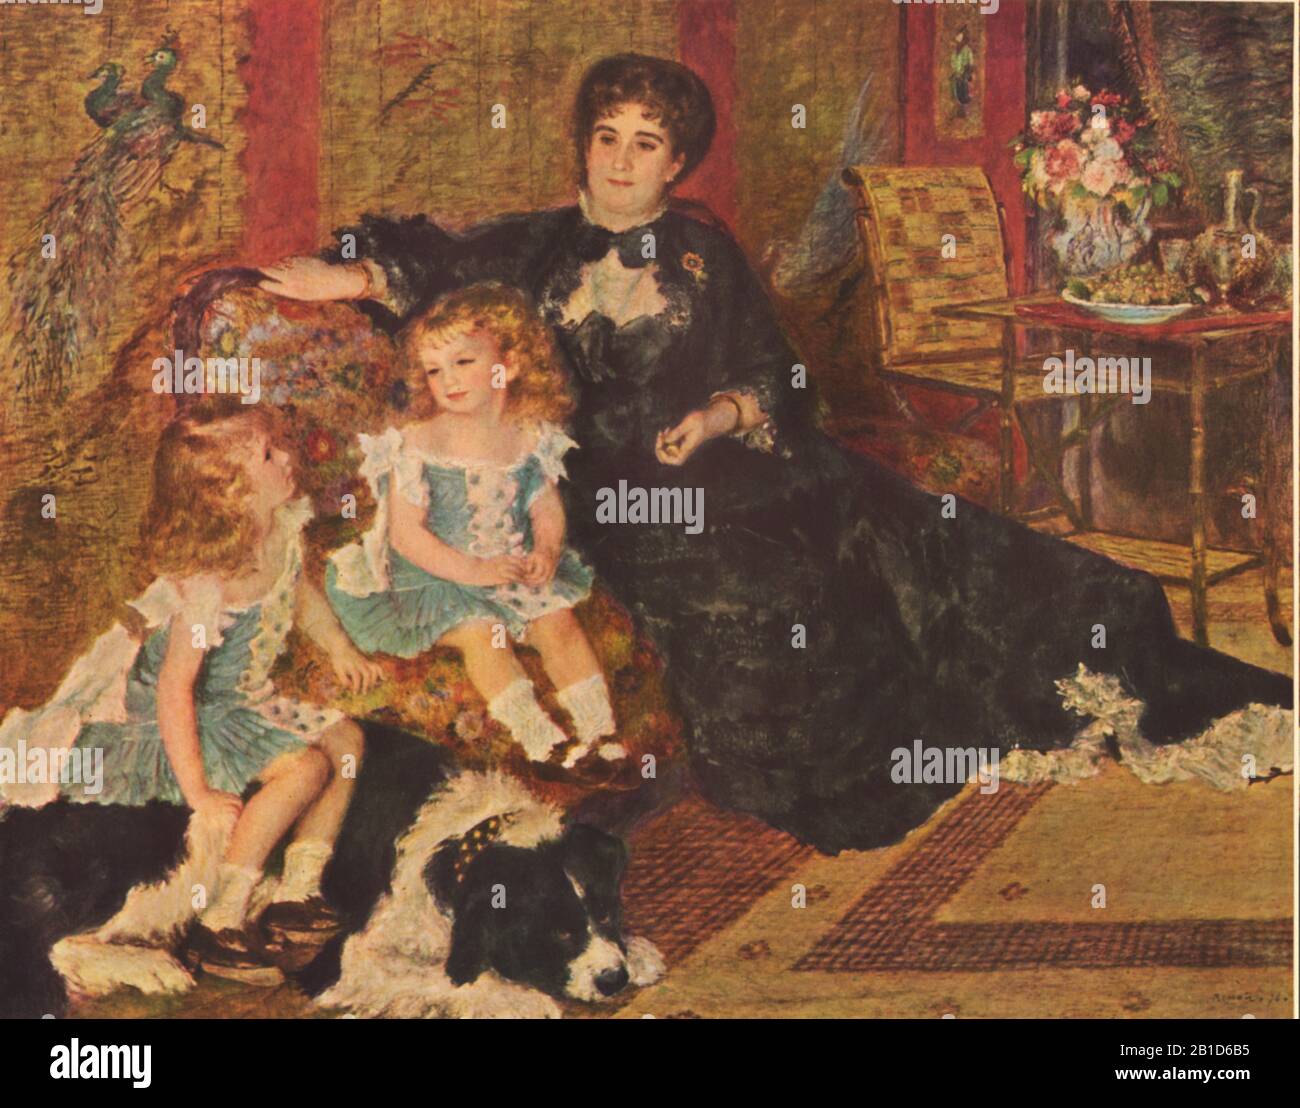 Mme Charpentier et Ses enfants (1878) - 19ième siècle Peinture de Pierre-Auguste Renoir - très haute résolution et image de qualité Banque D'Images